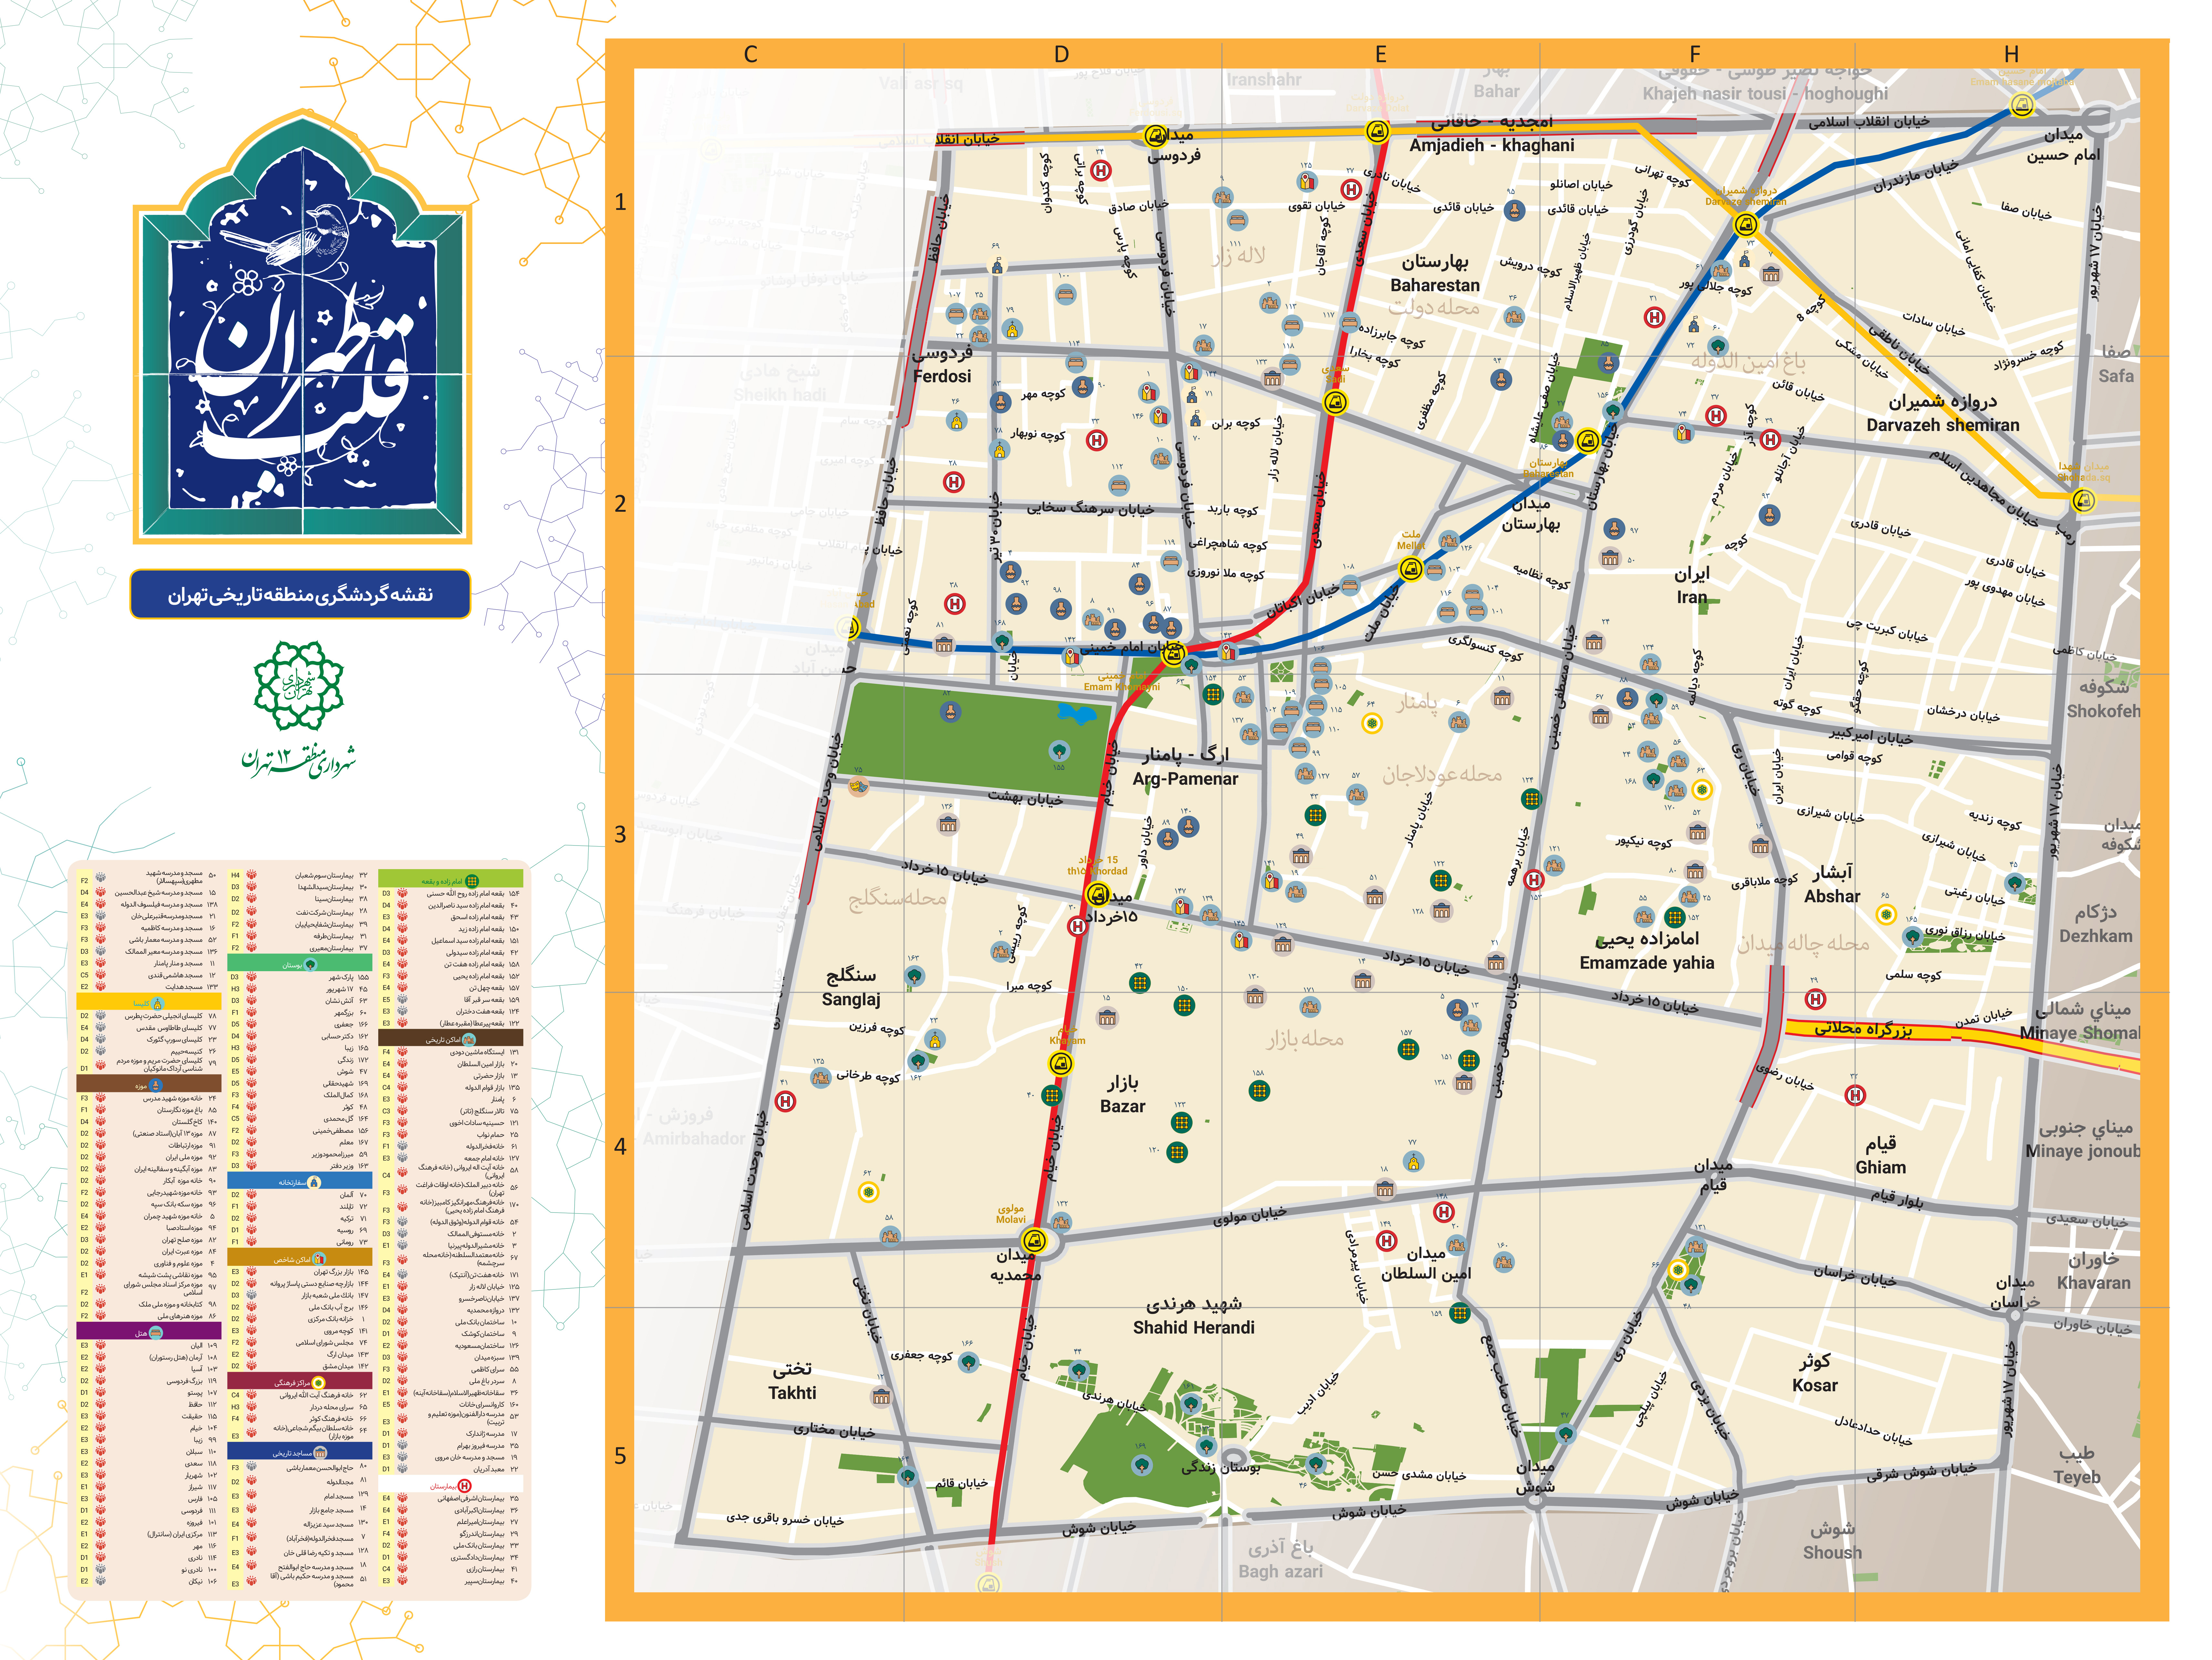 نقشه بازار بزرگ تهران با کیفیت عالی ، جدید و کامل